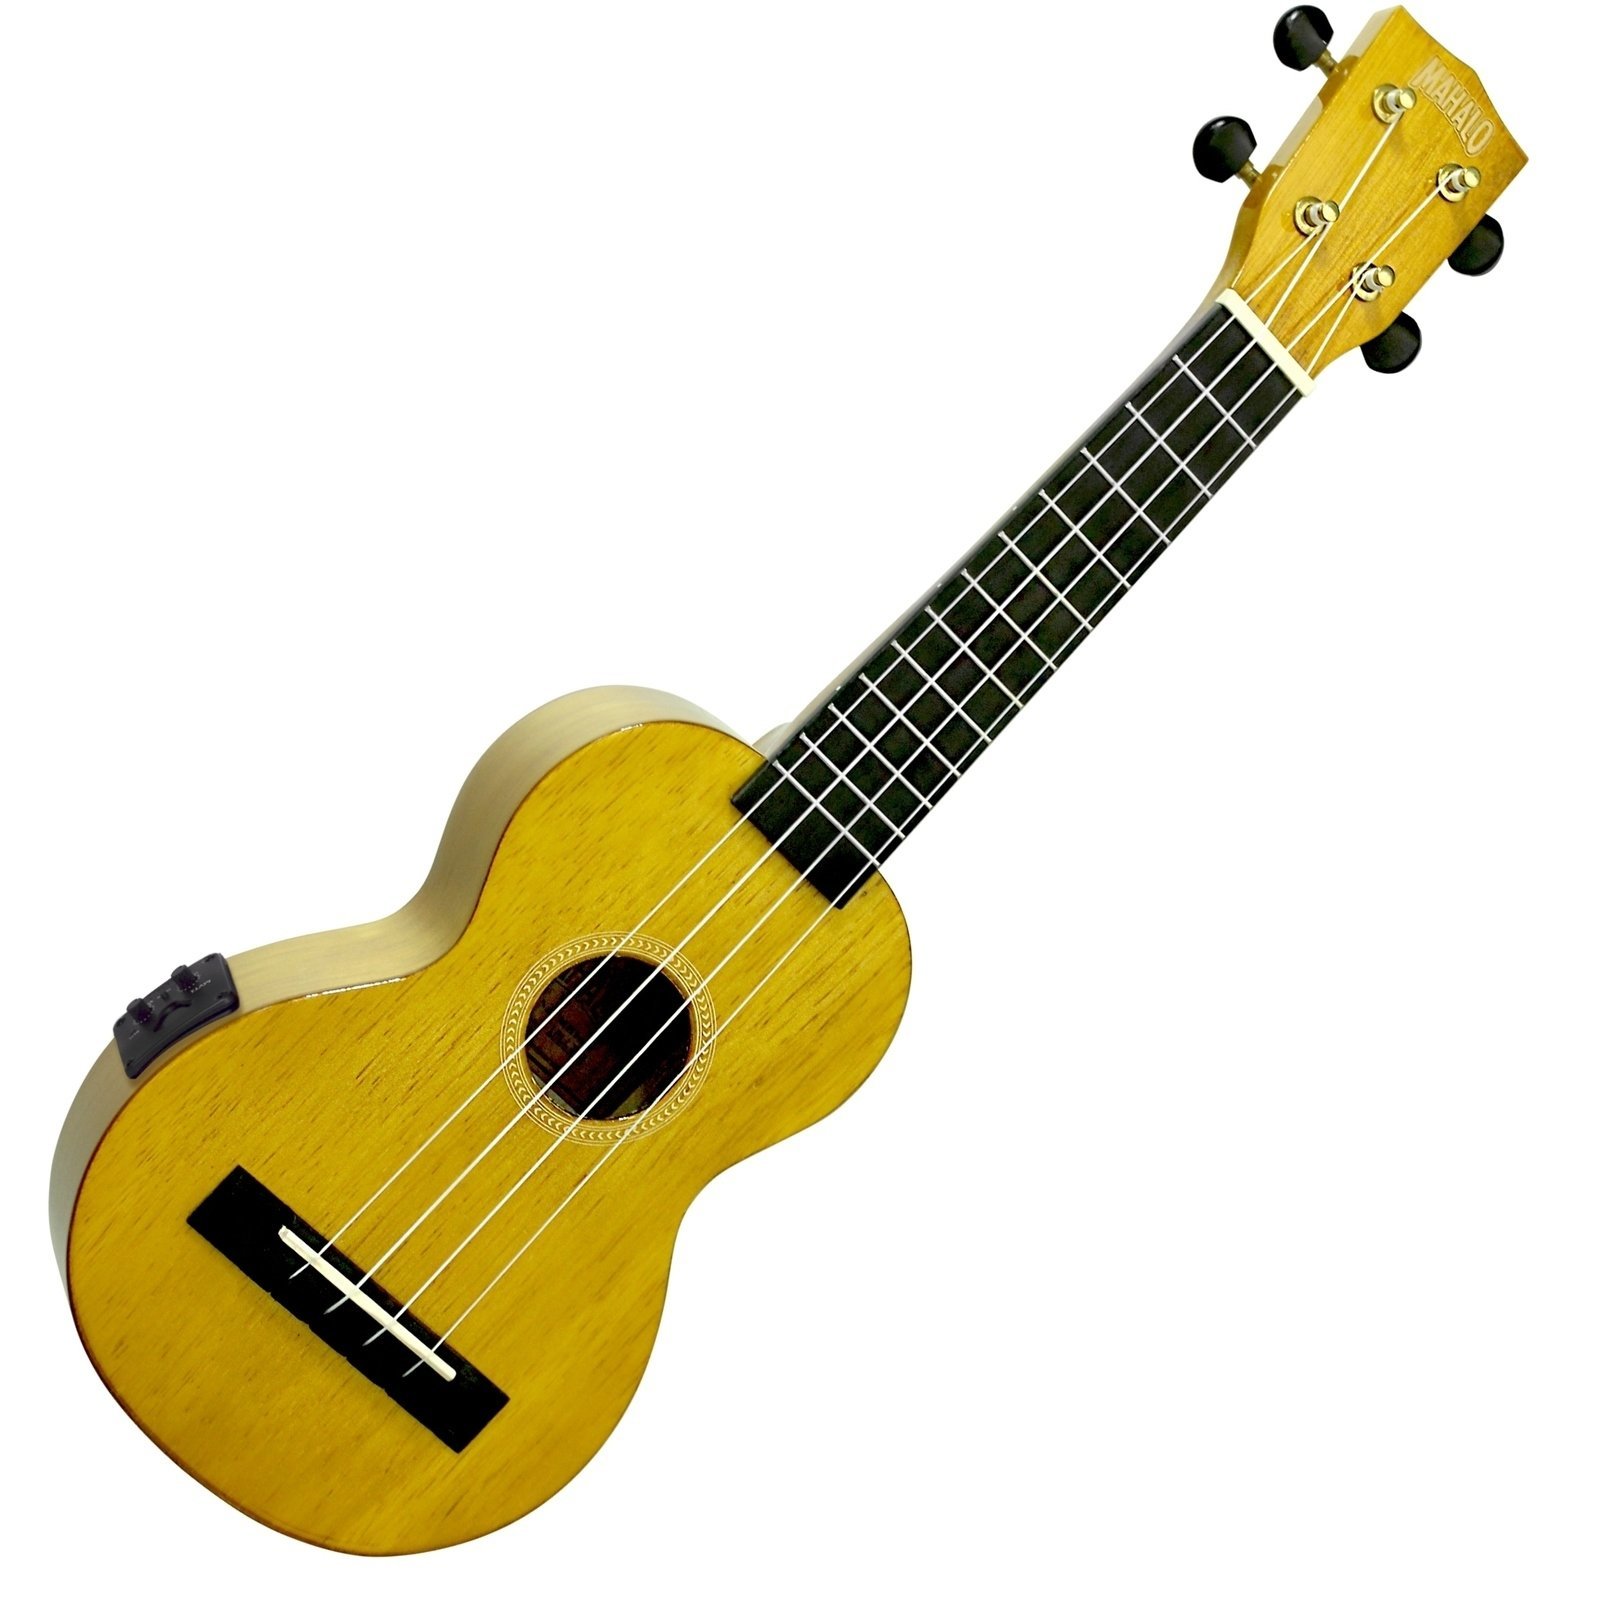 Szoprán ukulele Mahalo Electric-Acoustic Soprano Ukulele Vintage Natural